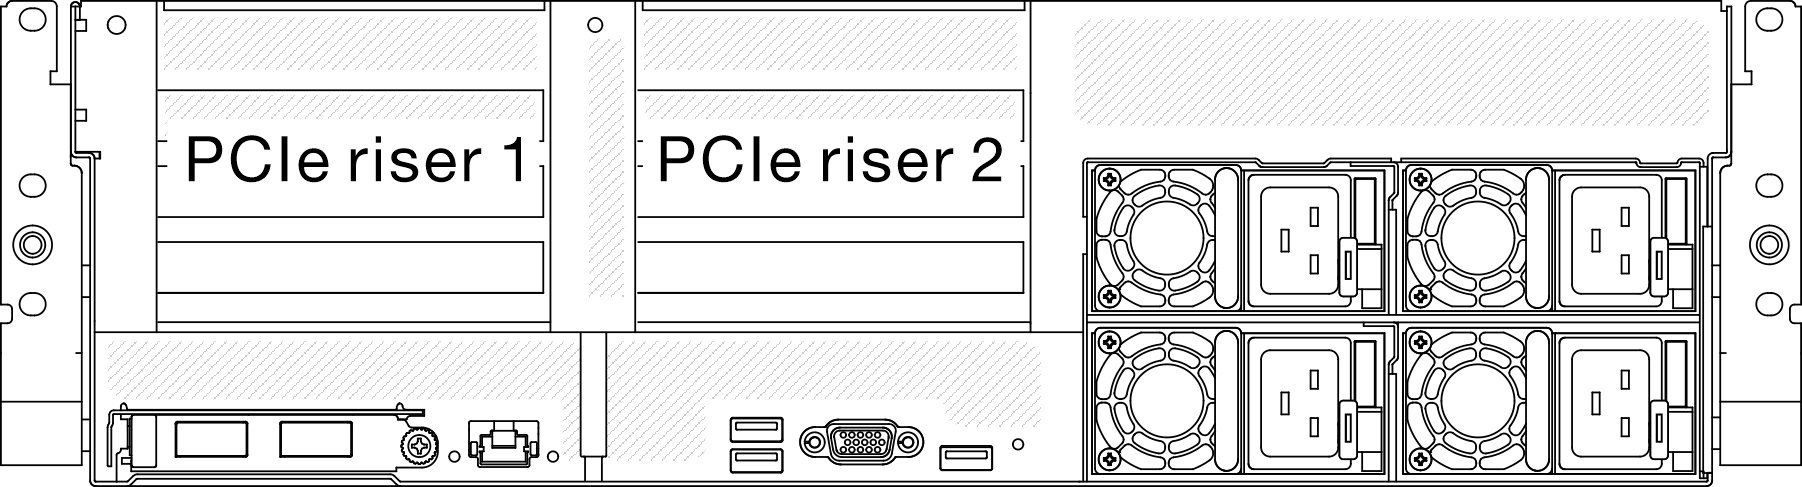 PCIe riser locations